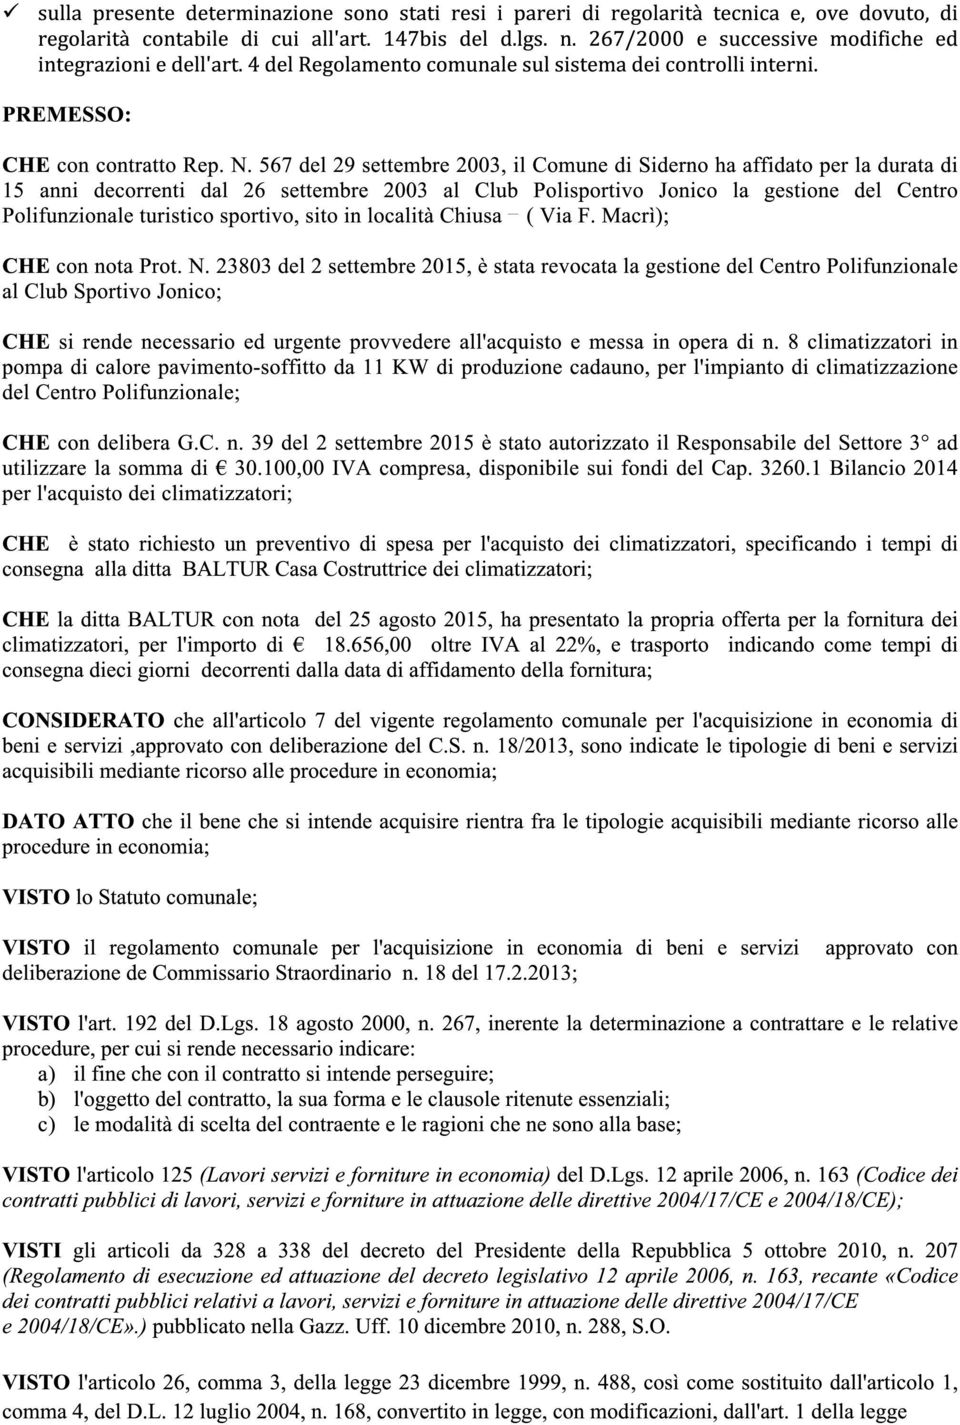 567 del 29 settembre 2003, il Comune di Siderno ha affidato per la durata di 15 anni decorrenti dal 26 settembre 2003 al Club Polisportivo Jonico la gestione del Centro Polifunzionale turistico